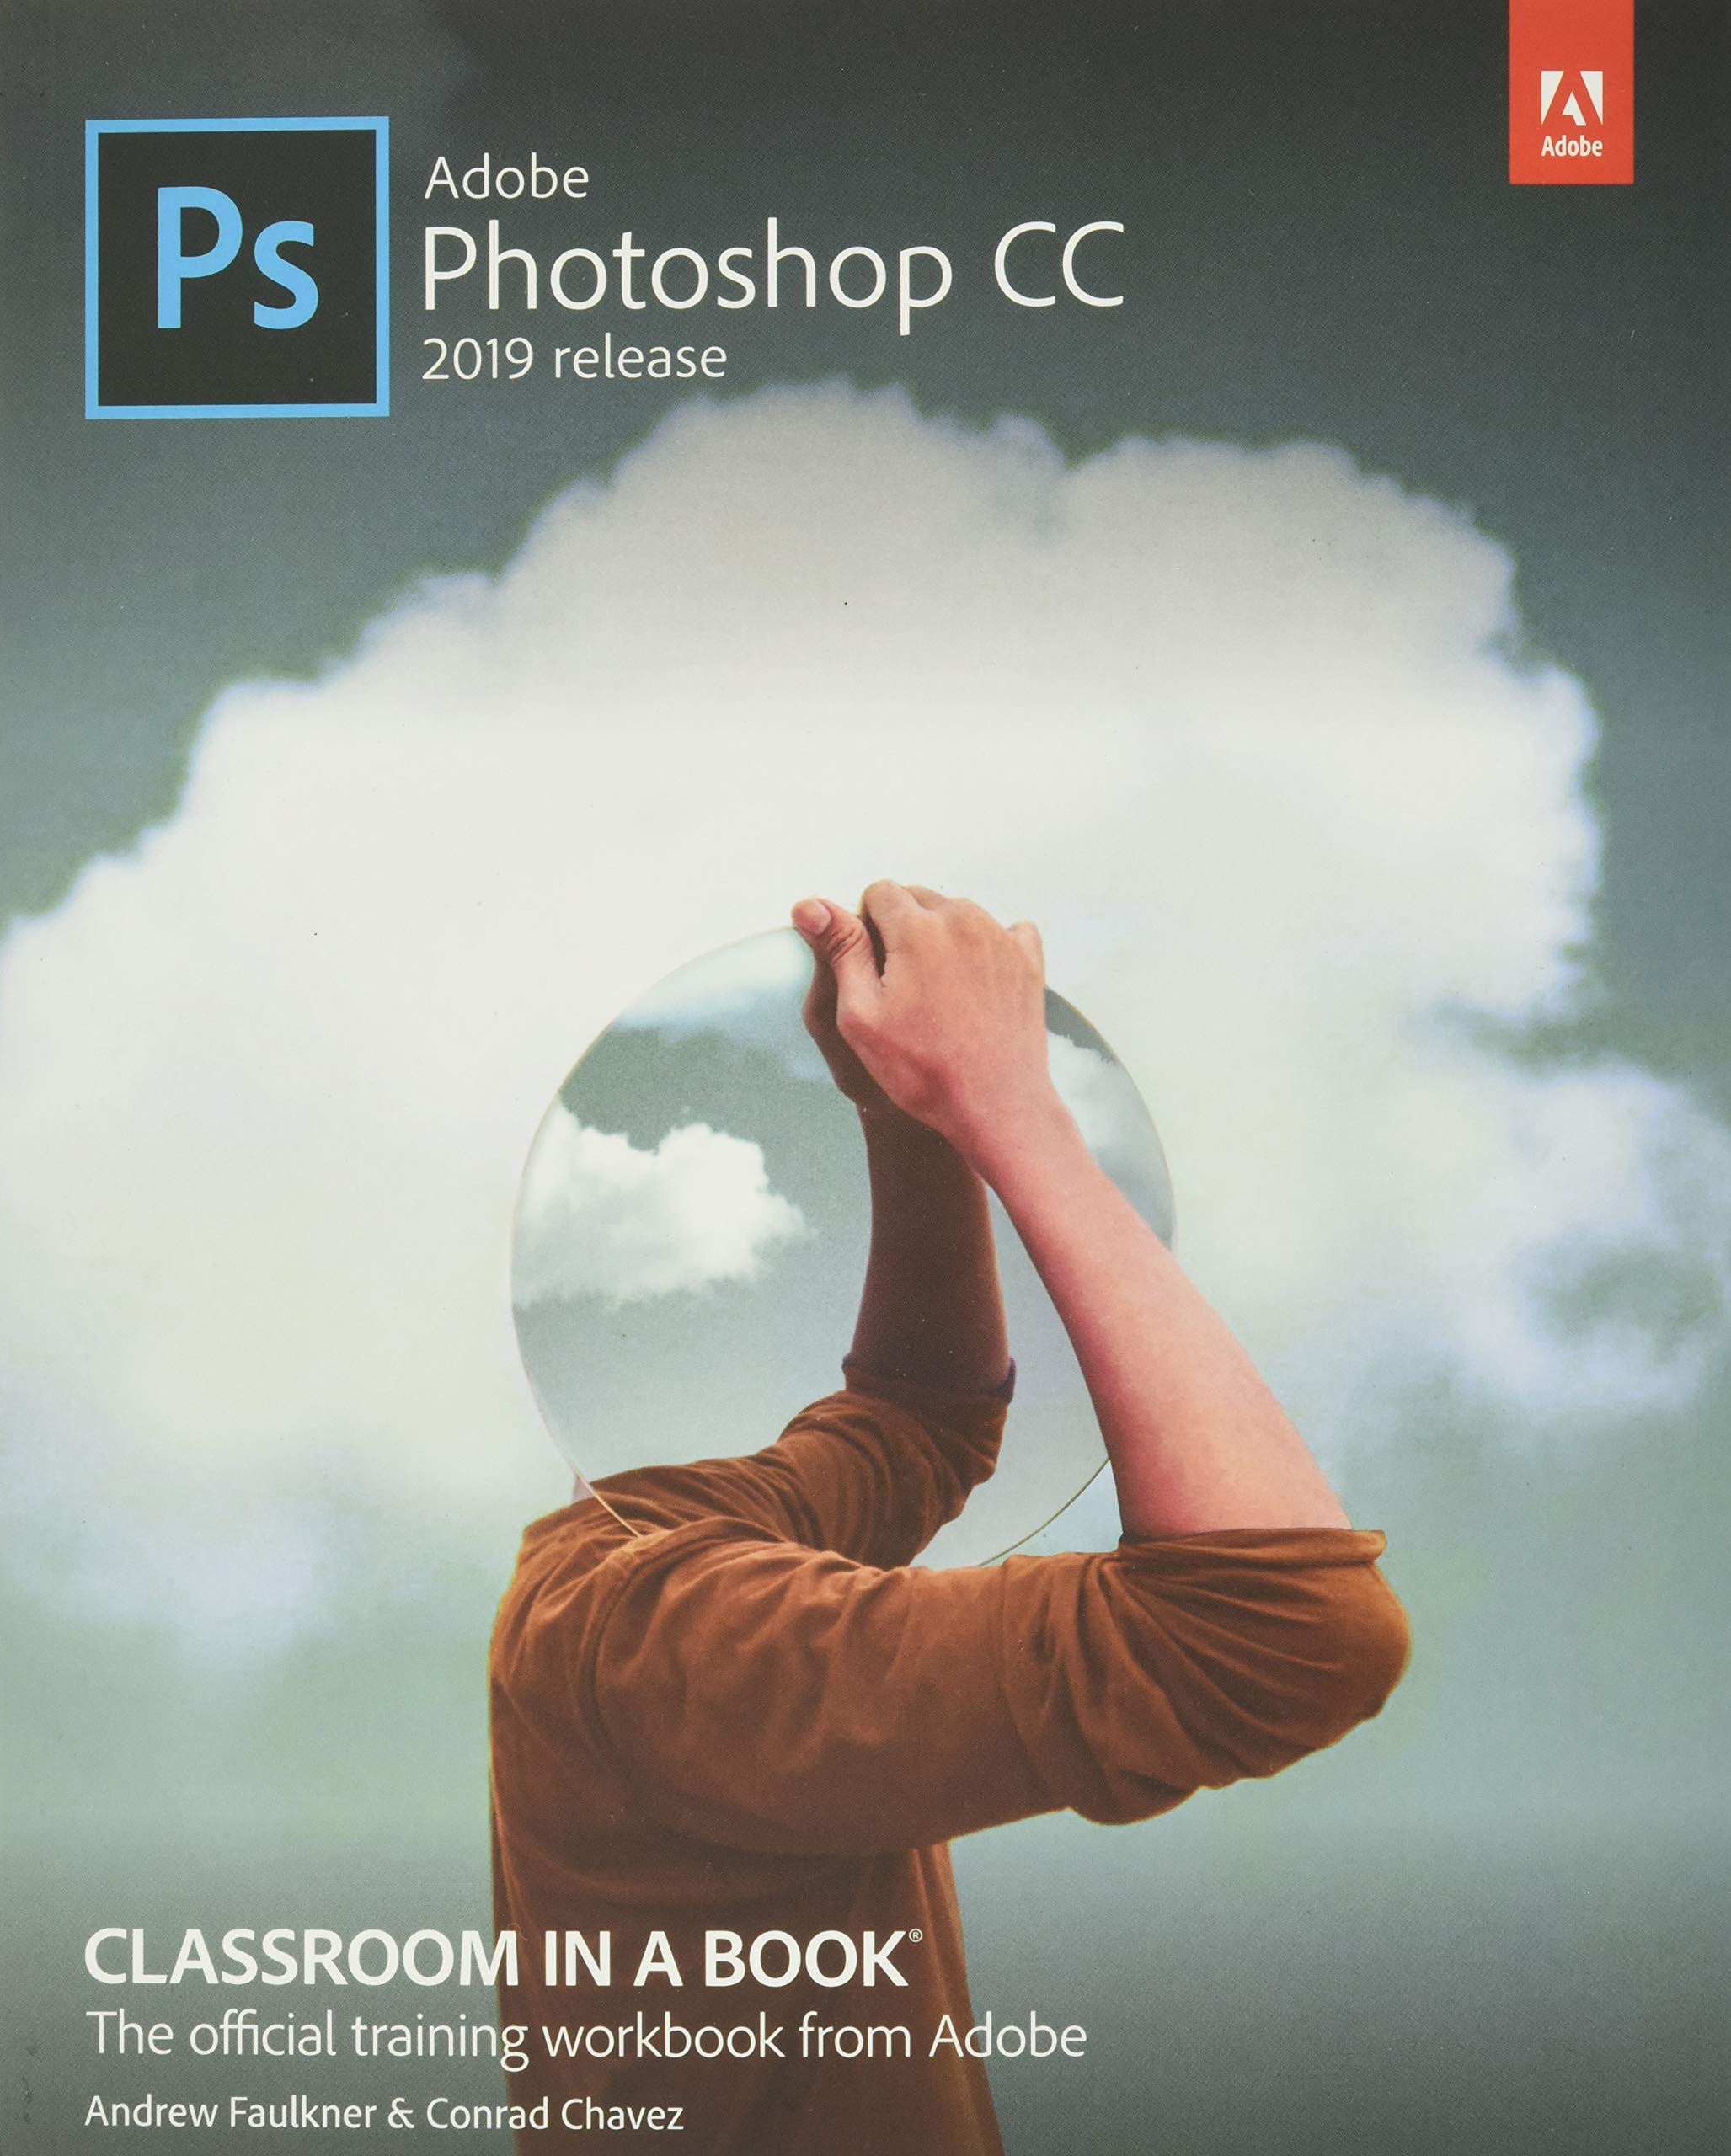 photoshop cc 2020 price